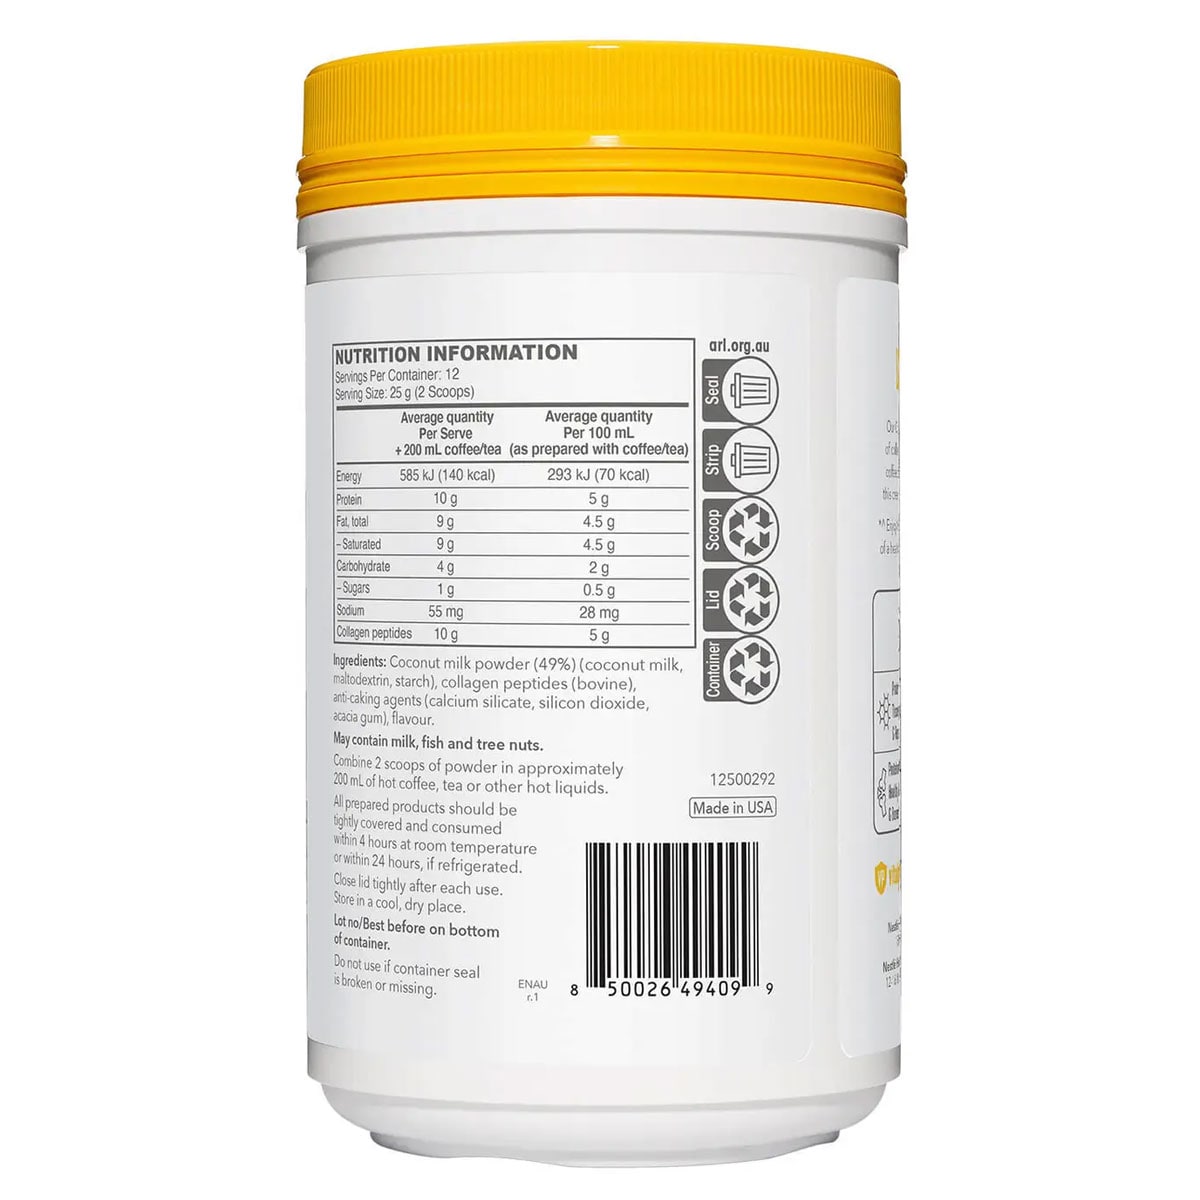 Vital Proteins Collagen Creamer Vanilla 300g